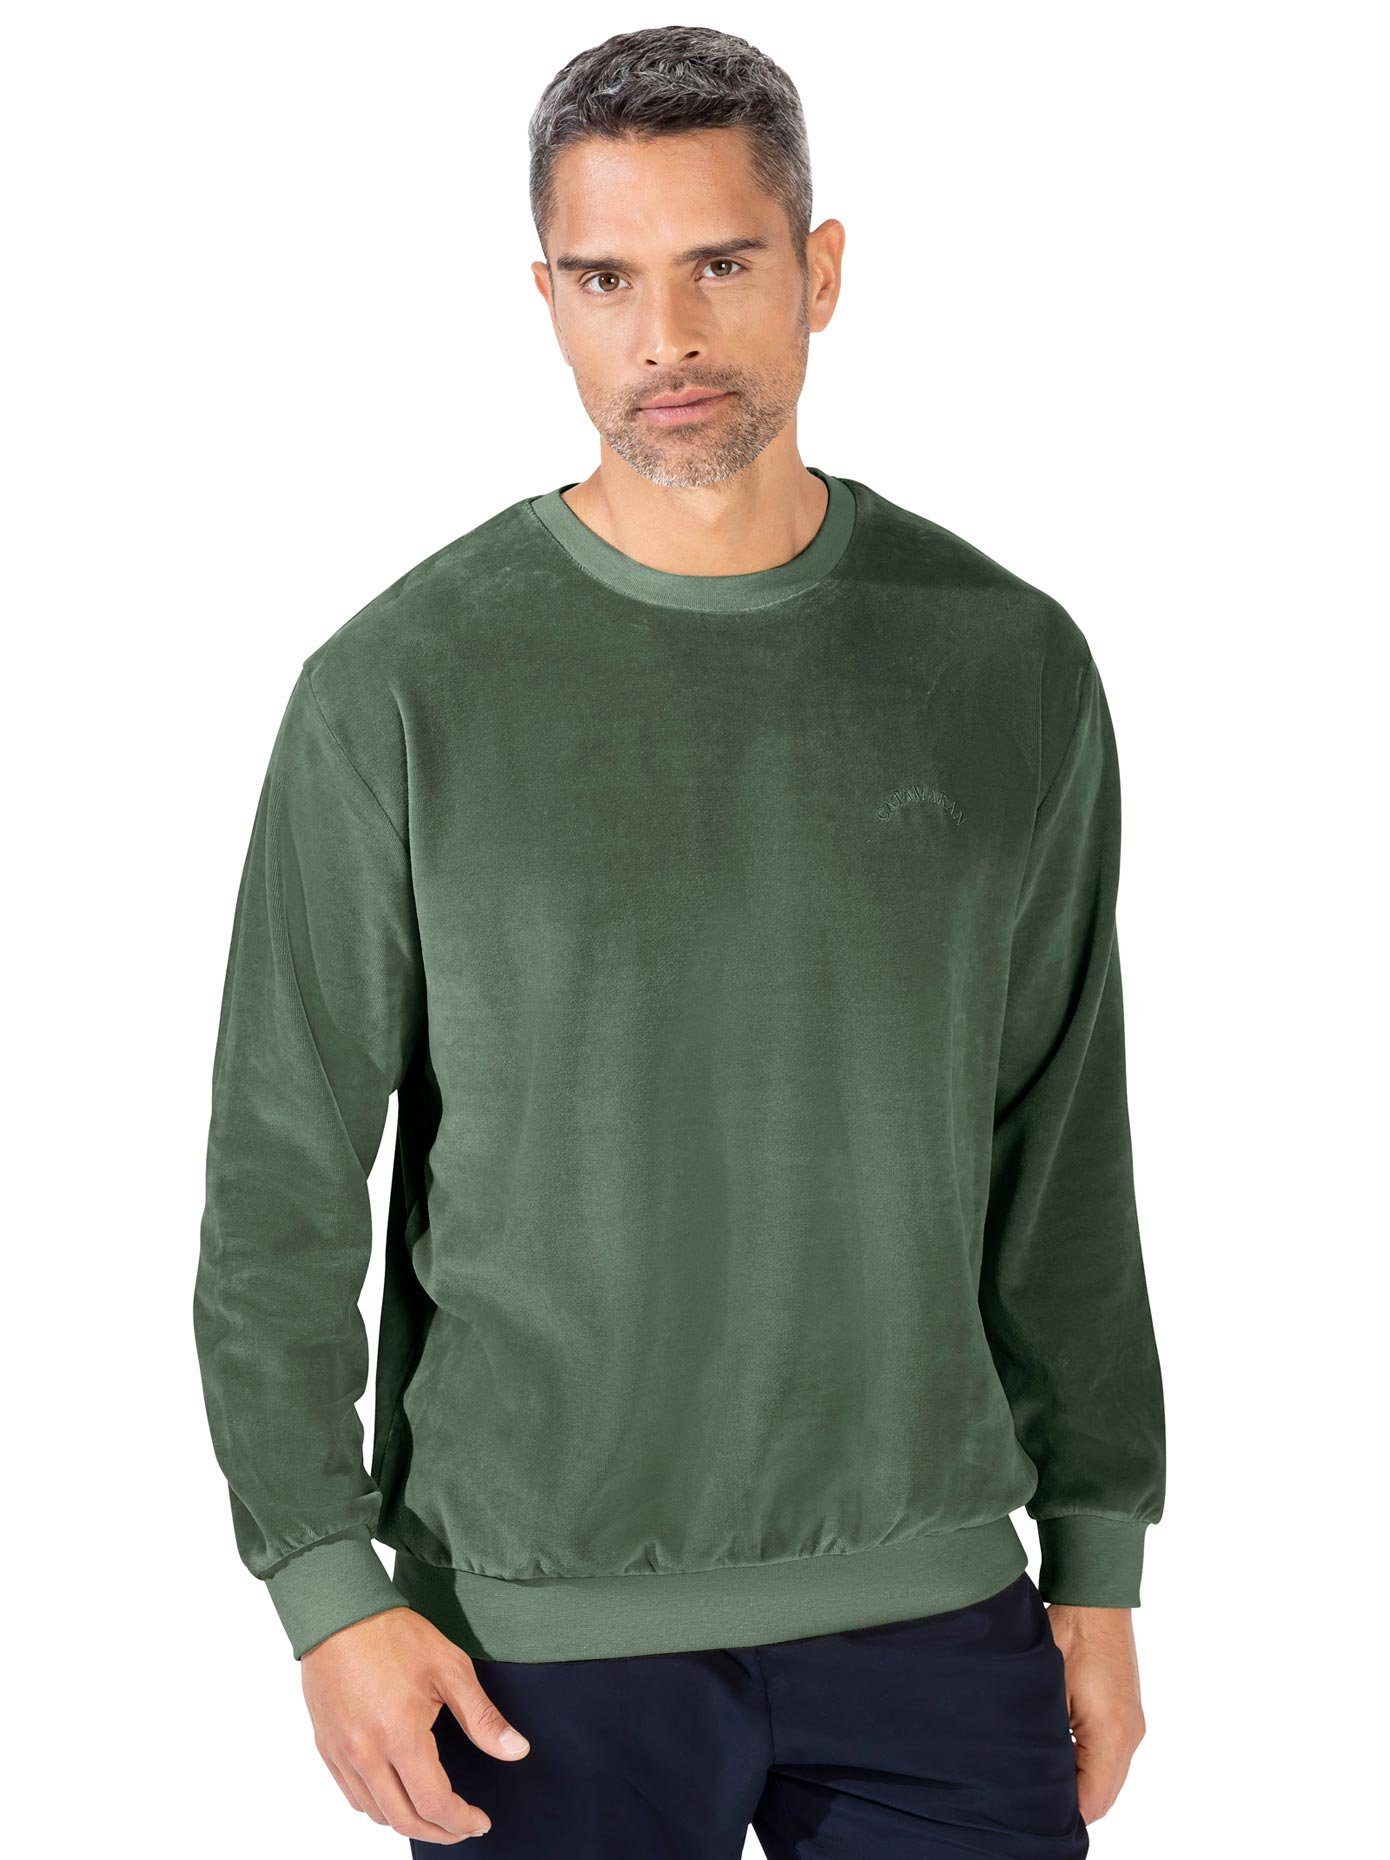 Classic Sweatshirt online kaufen | OTTO